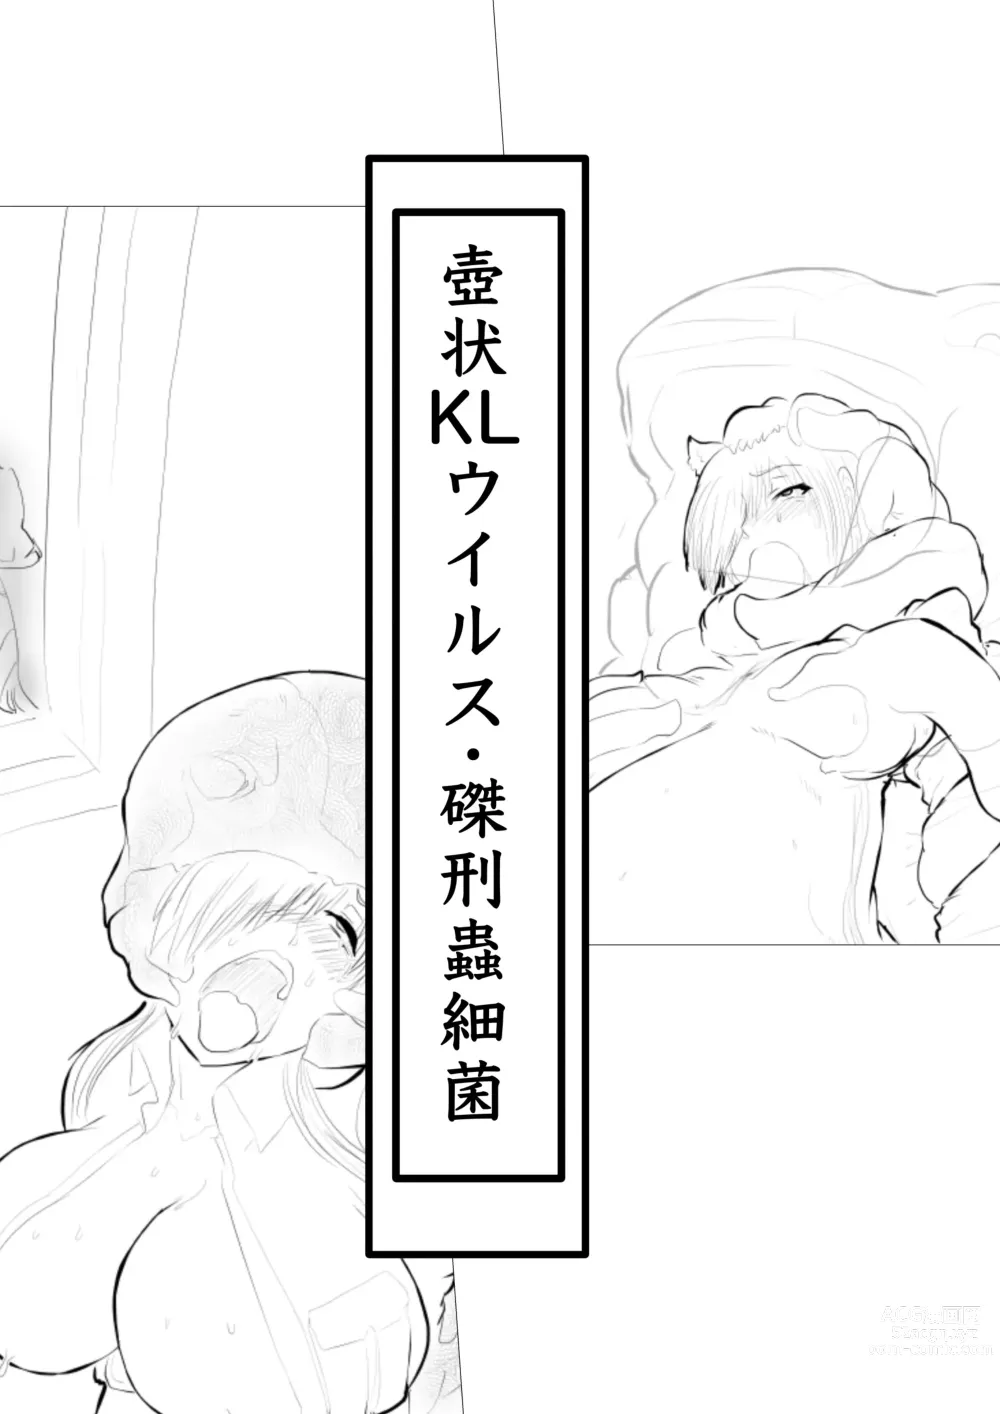 Page 26 of doujinshi Hakkekkyuu ga Byougen-sei-han Saikin ni Nabura Rerutsu!